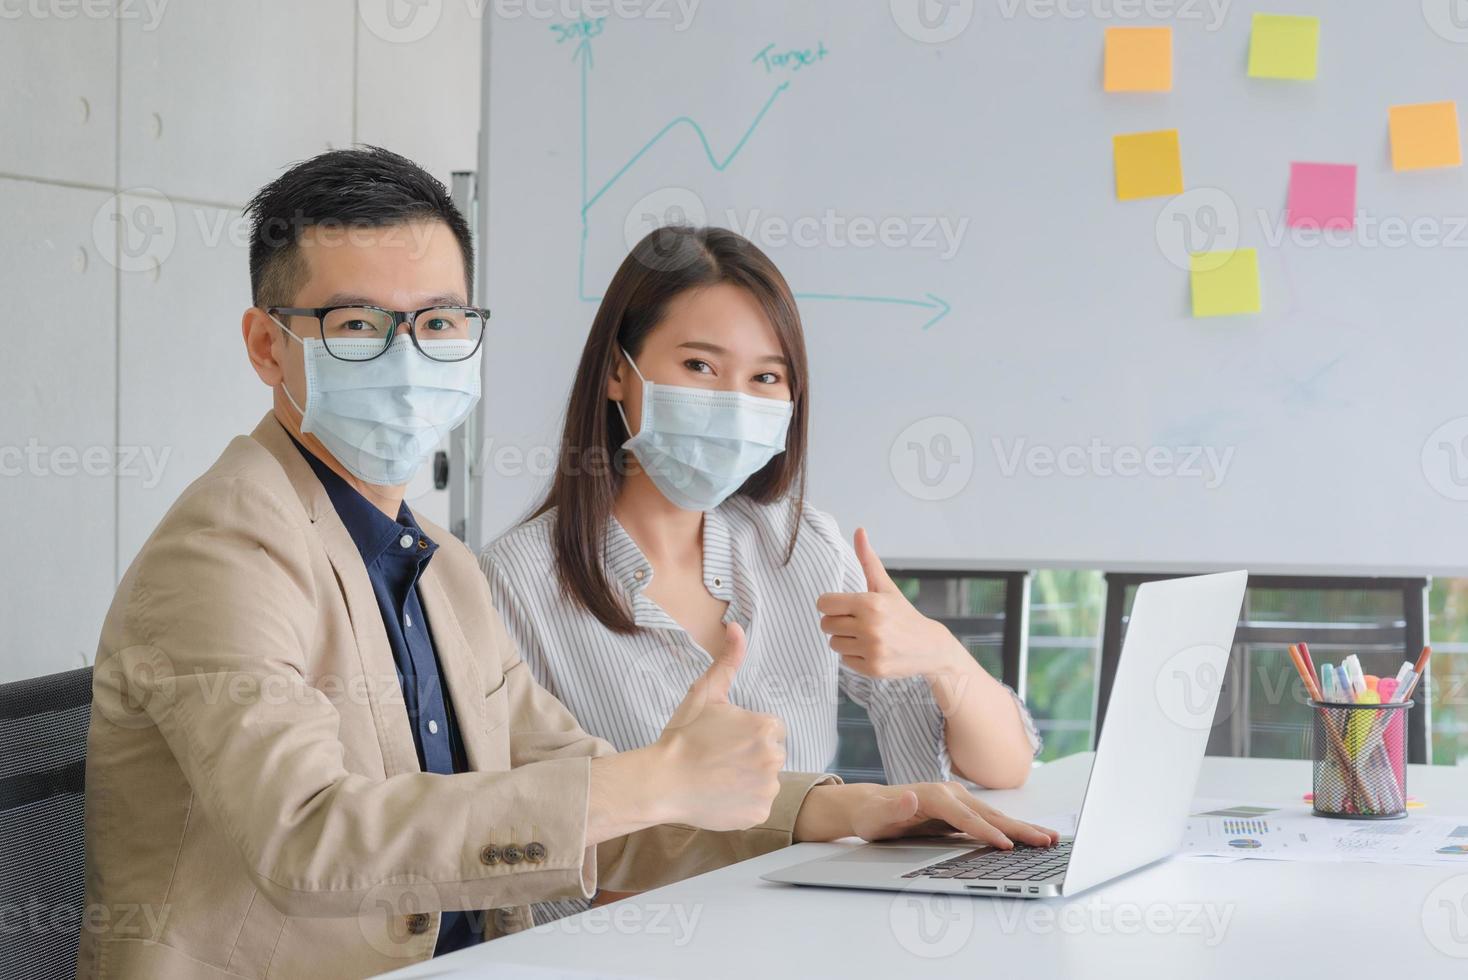 zakelijke werknemers die tijdens het werk op kantoor een masker dragen om de hygiëne te behouden, volgen het bedrijfsbeleid. preventief tijdens de periode van epidemie van coronavirus of covid19. foto